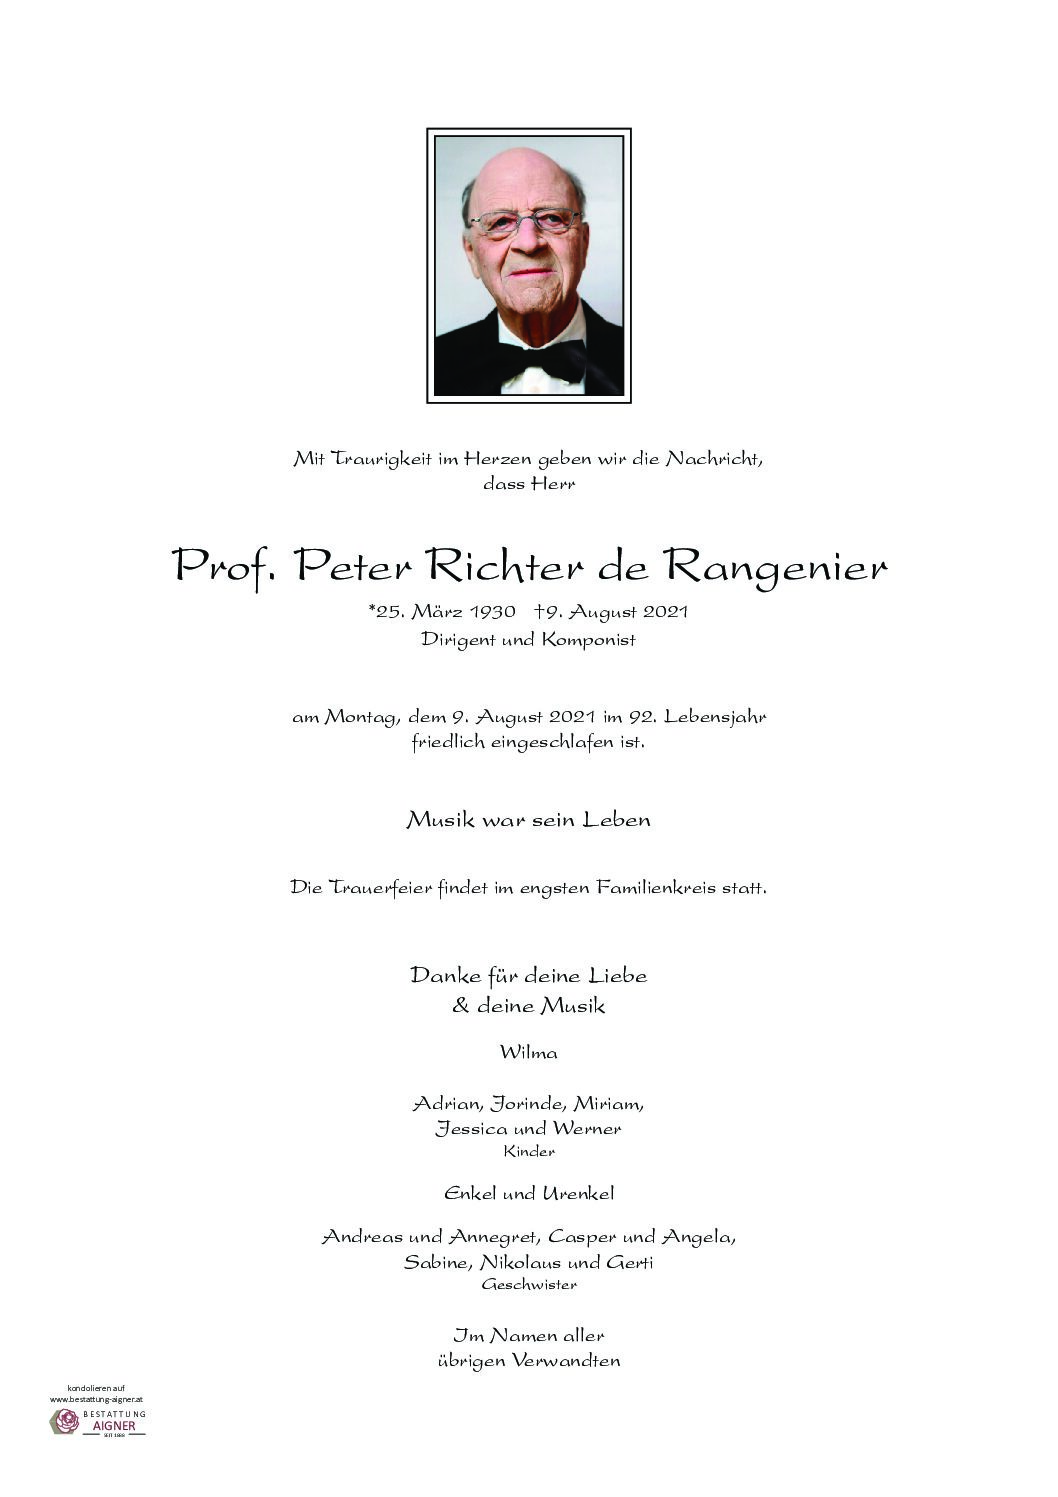 Peter Richter